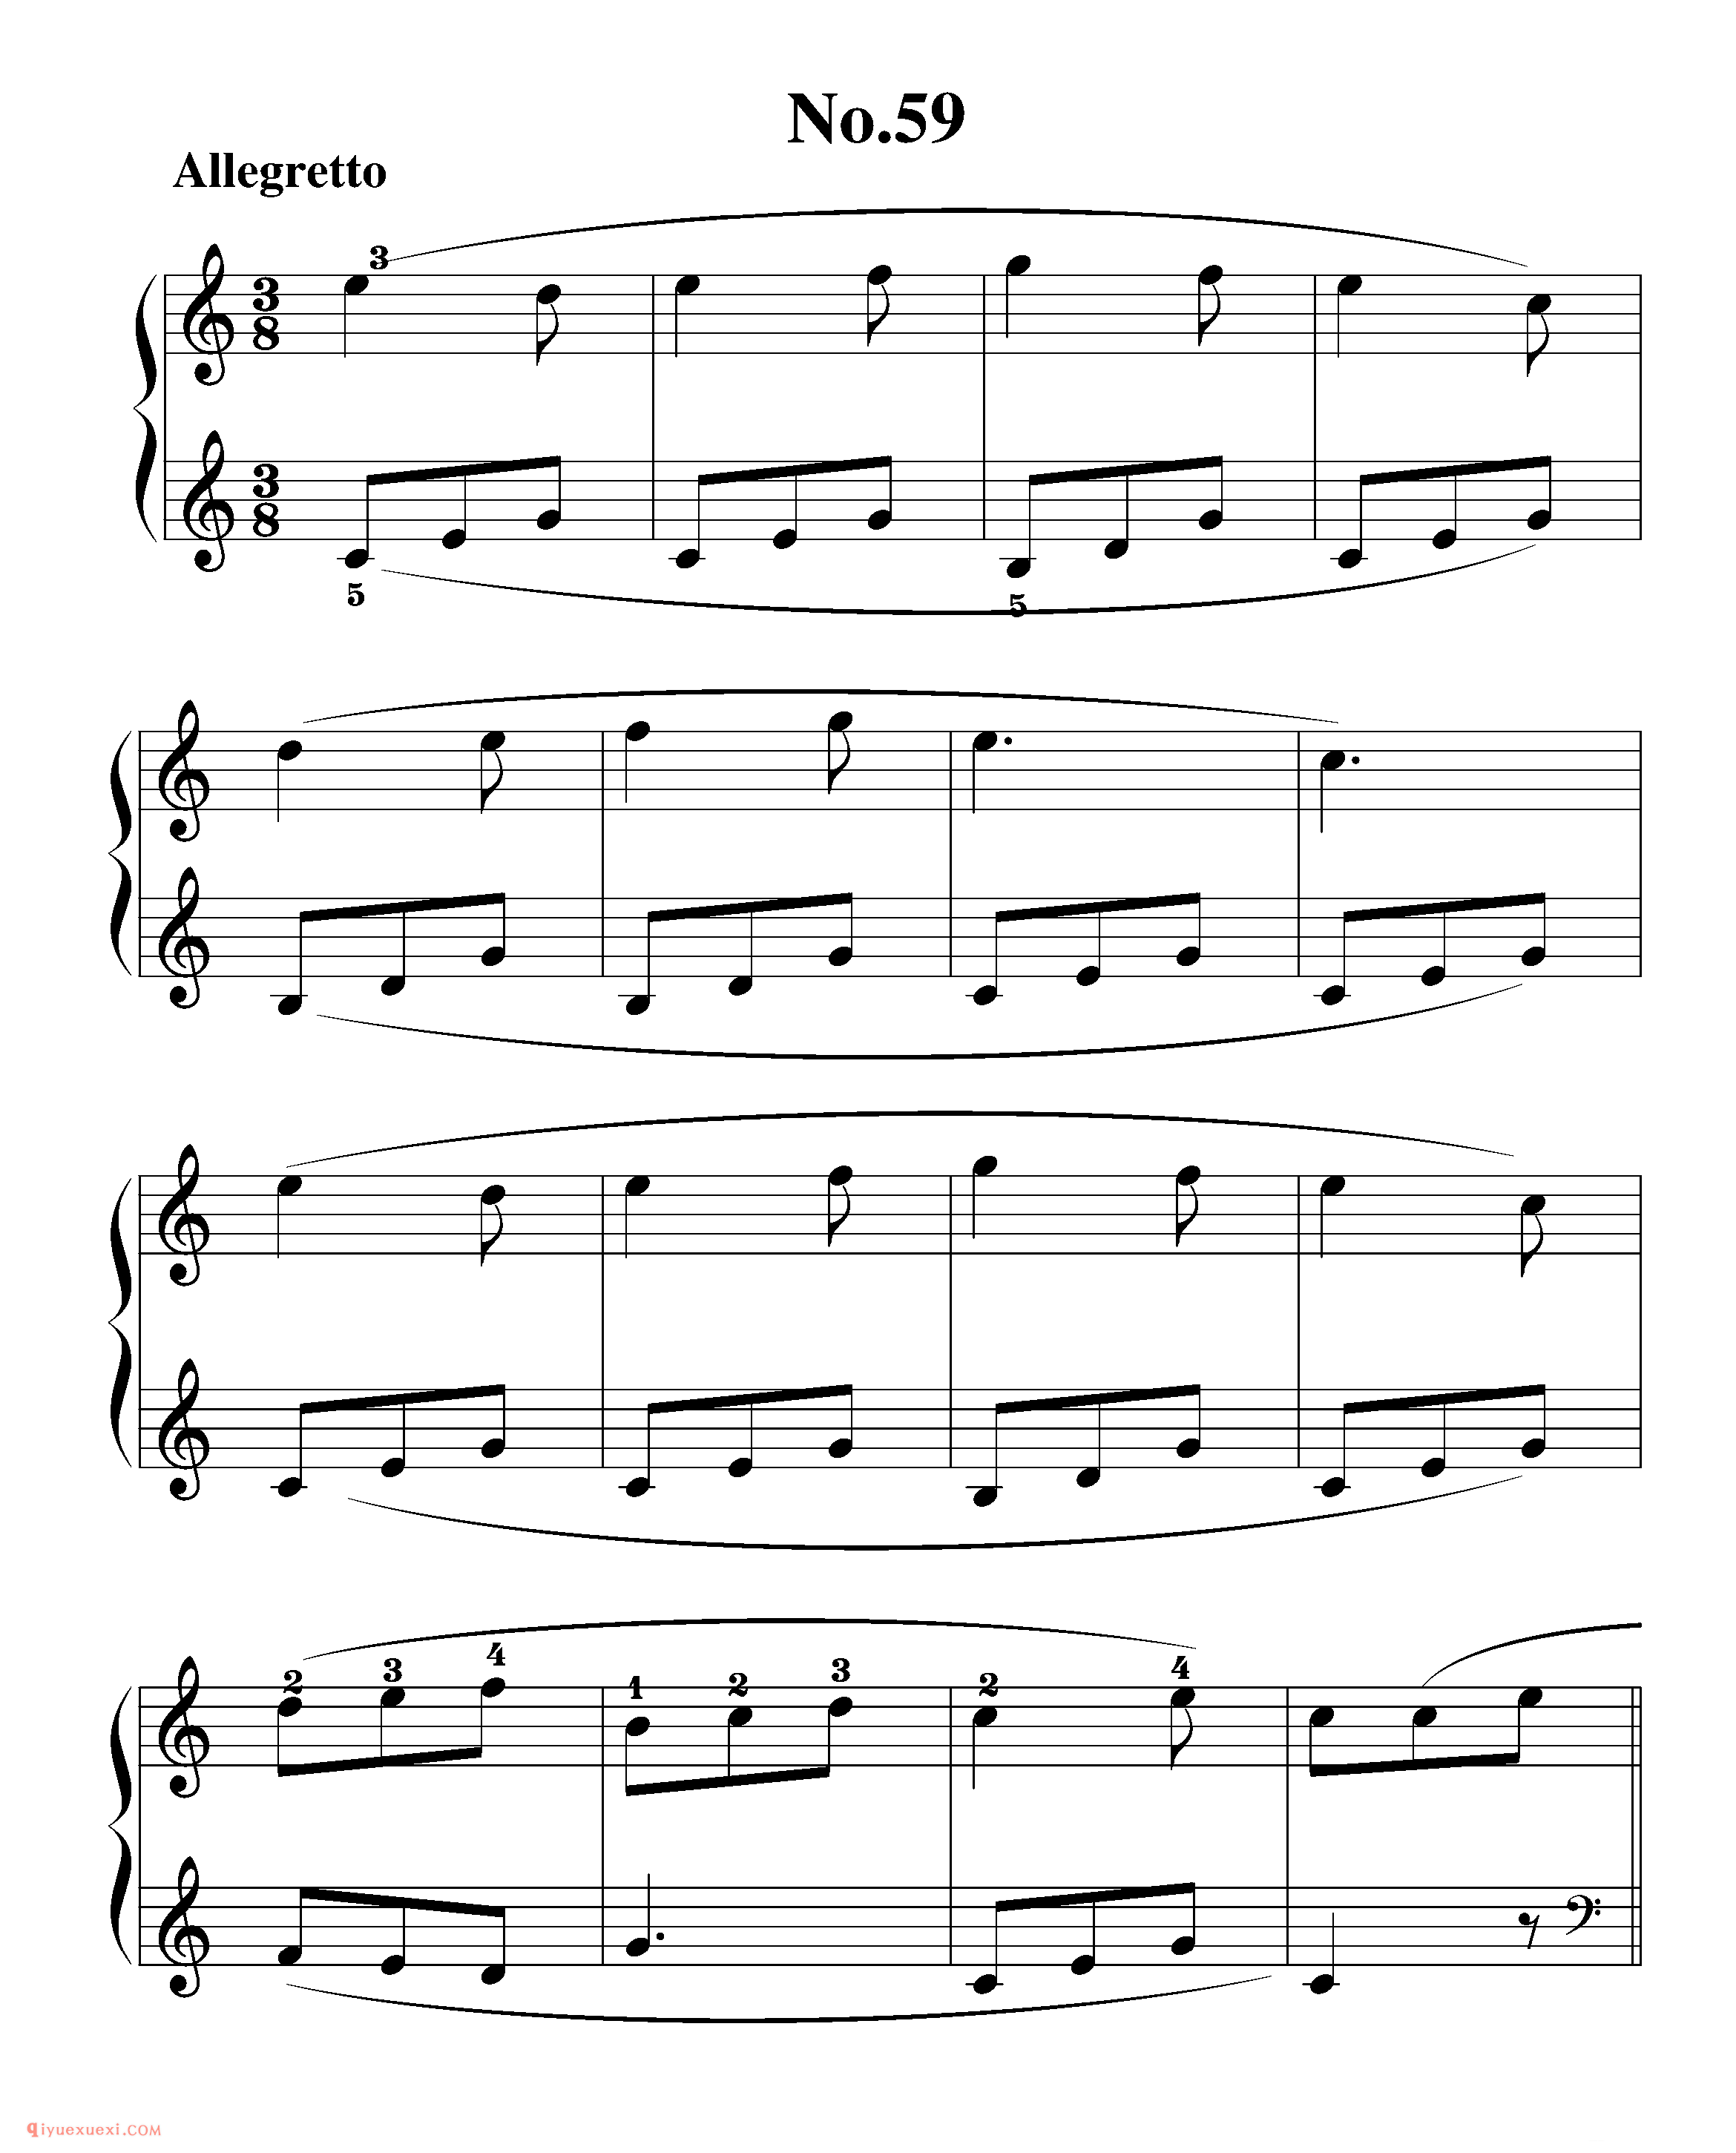 拜厄钢琴练习曲NO.59_拜尔(拜厄)钢琴基本教程练习曲第59首_五线谱